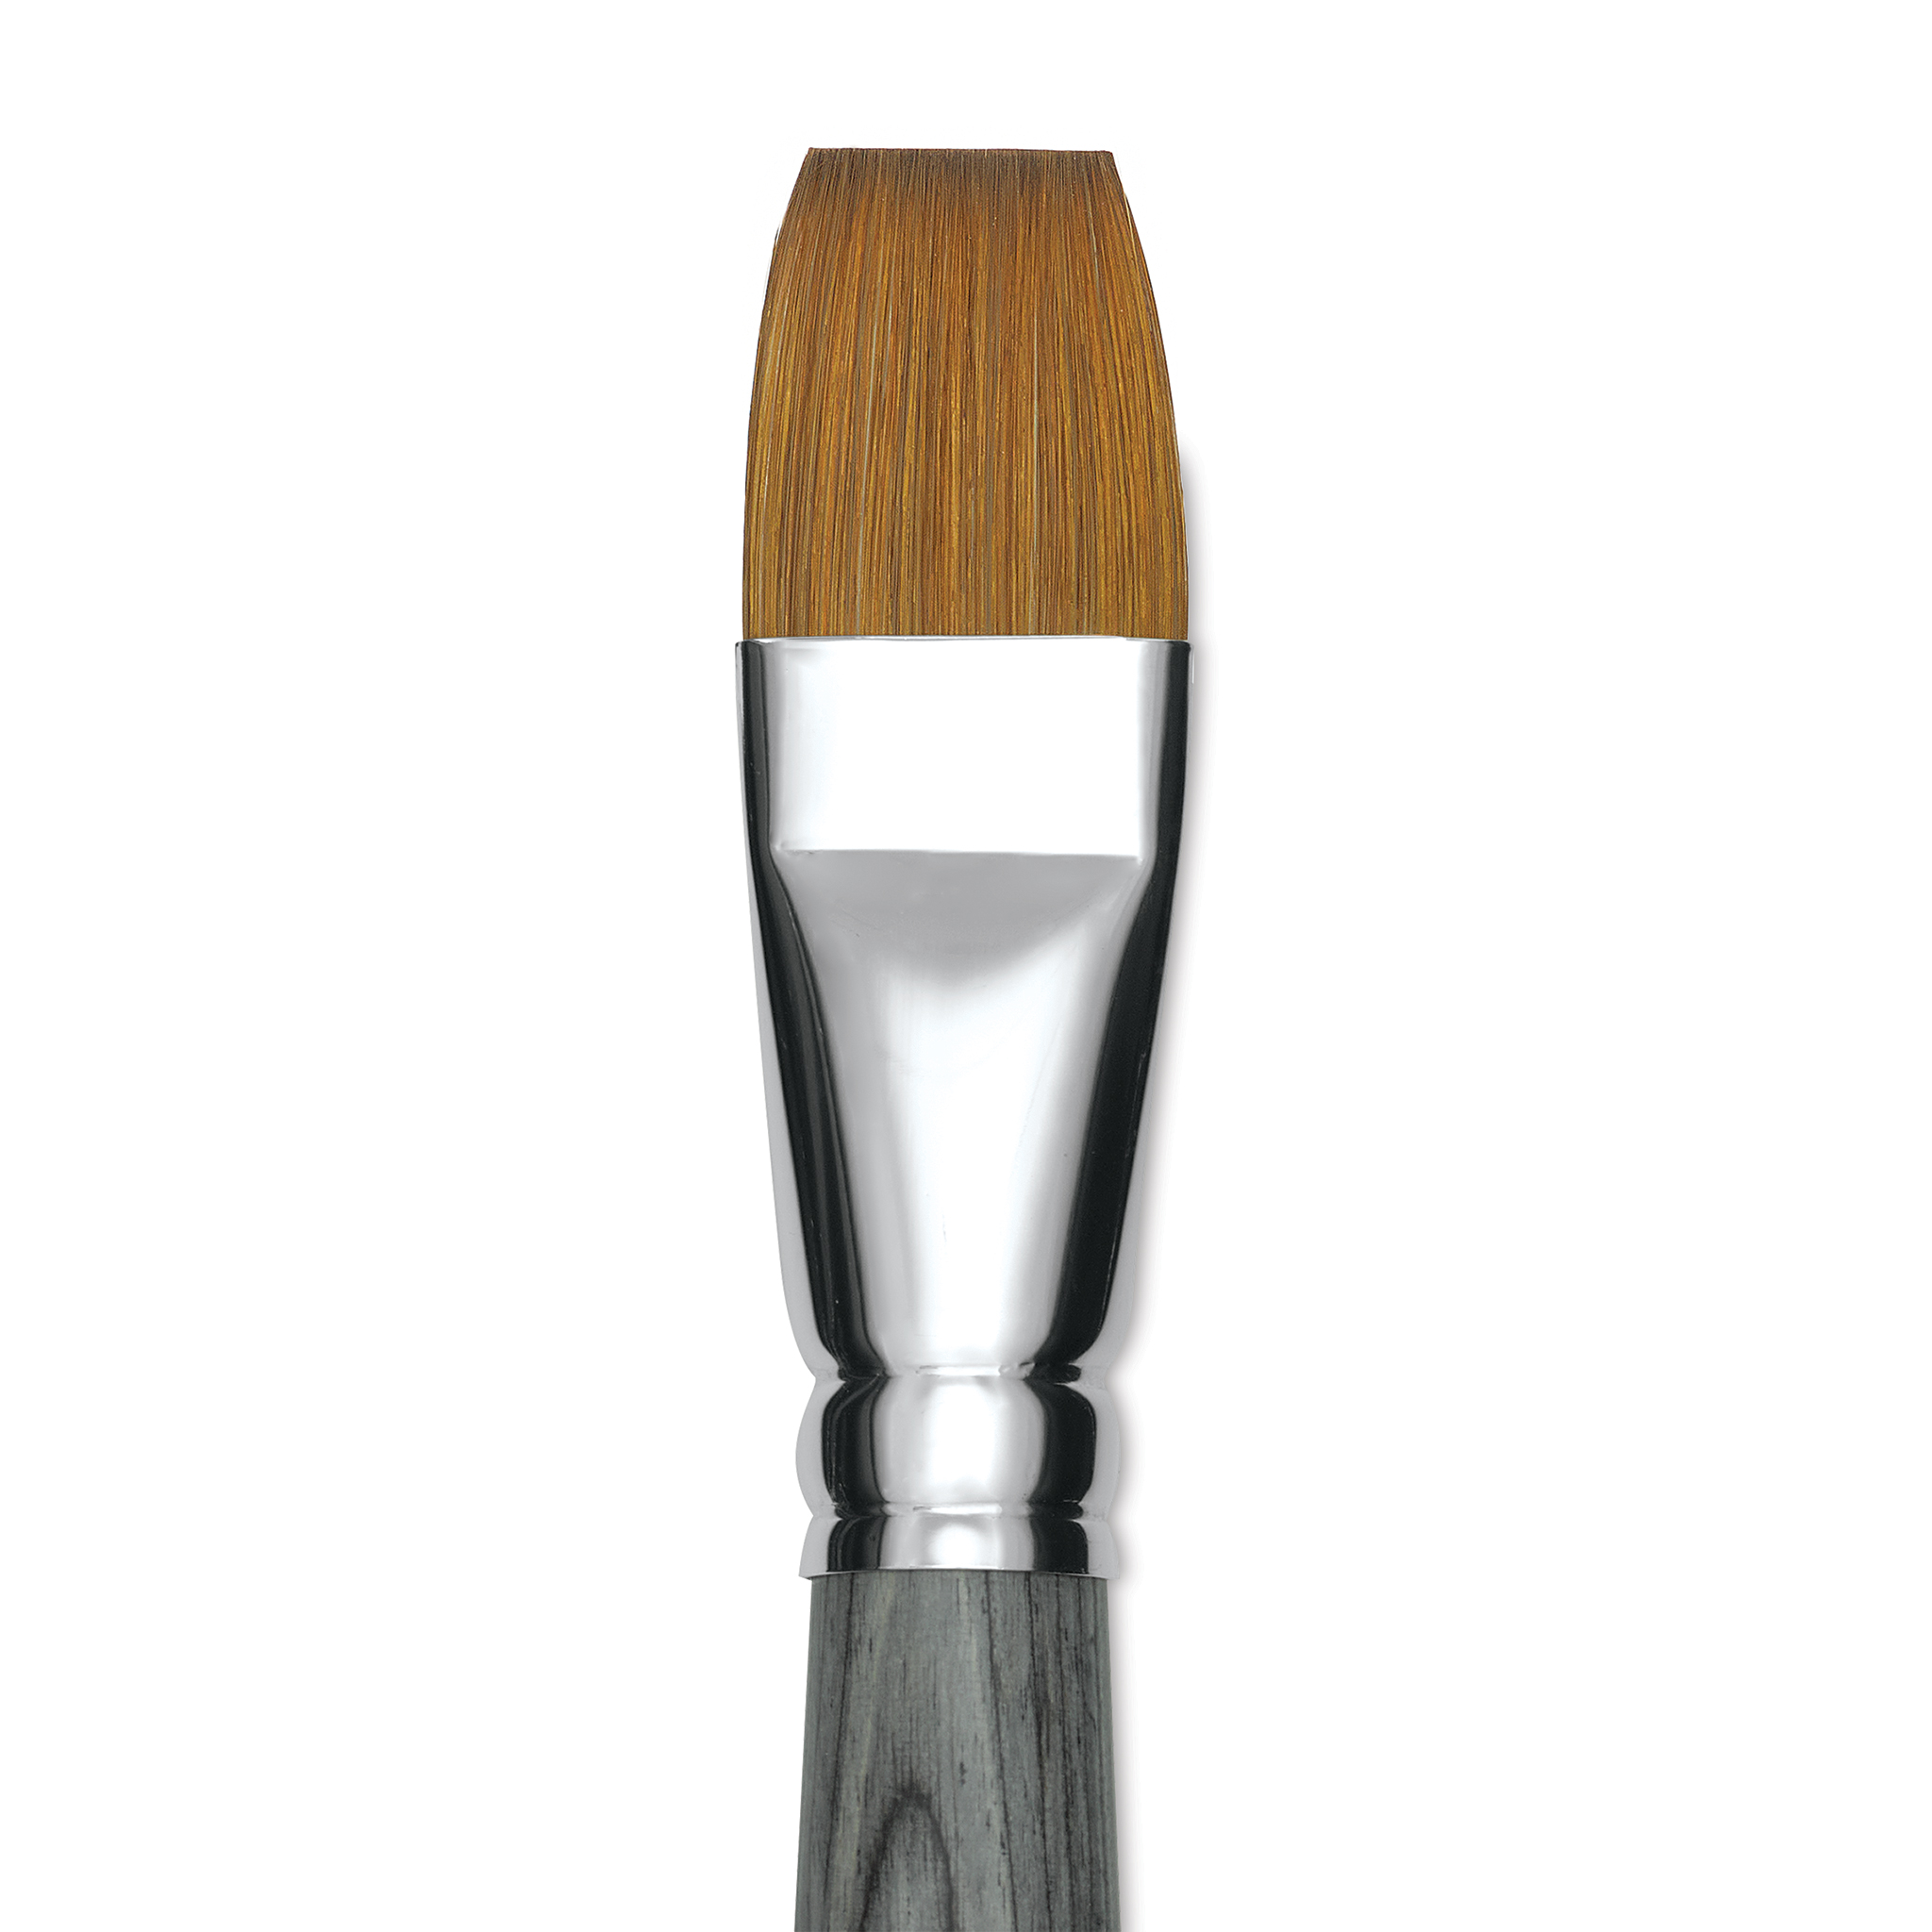 Da Vinci Colineo Series 5522 Synthetic Kolinsky Brush, Size 20 Flat